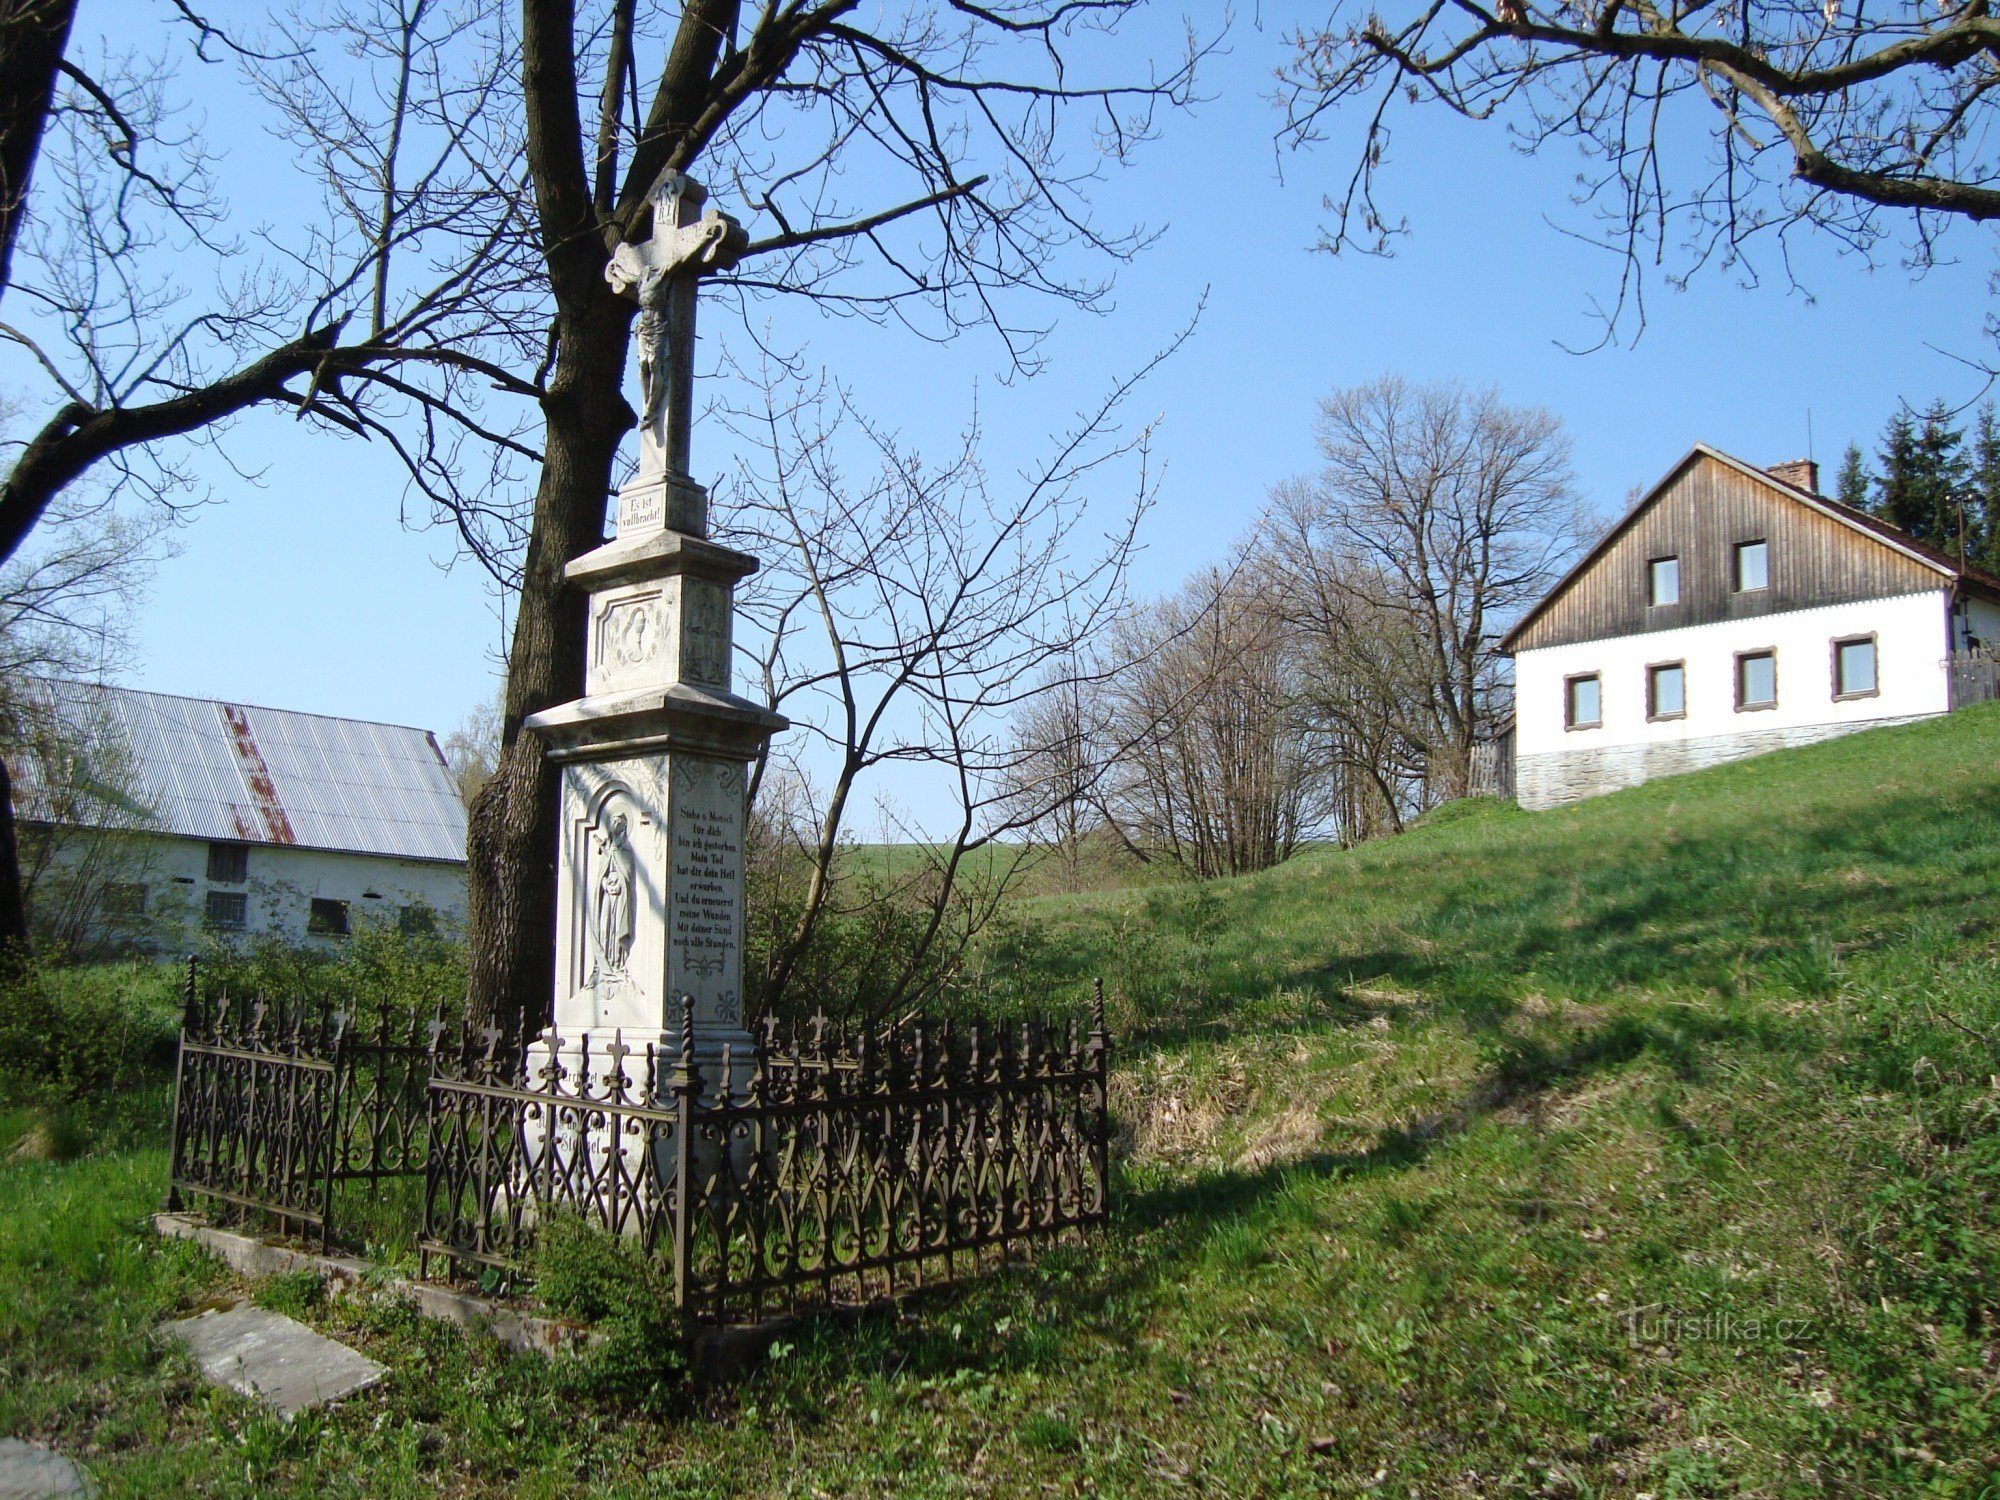 Norberčany-Stará Libavá-kruis uit 1892 in het centrum van het dorp-Foto: Ulrych Mir.